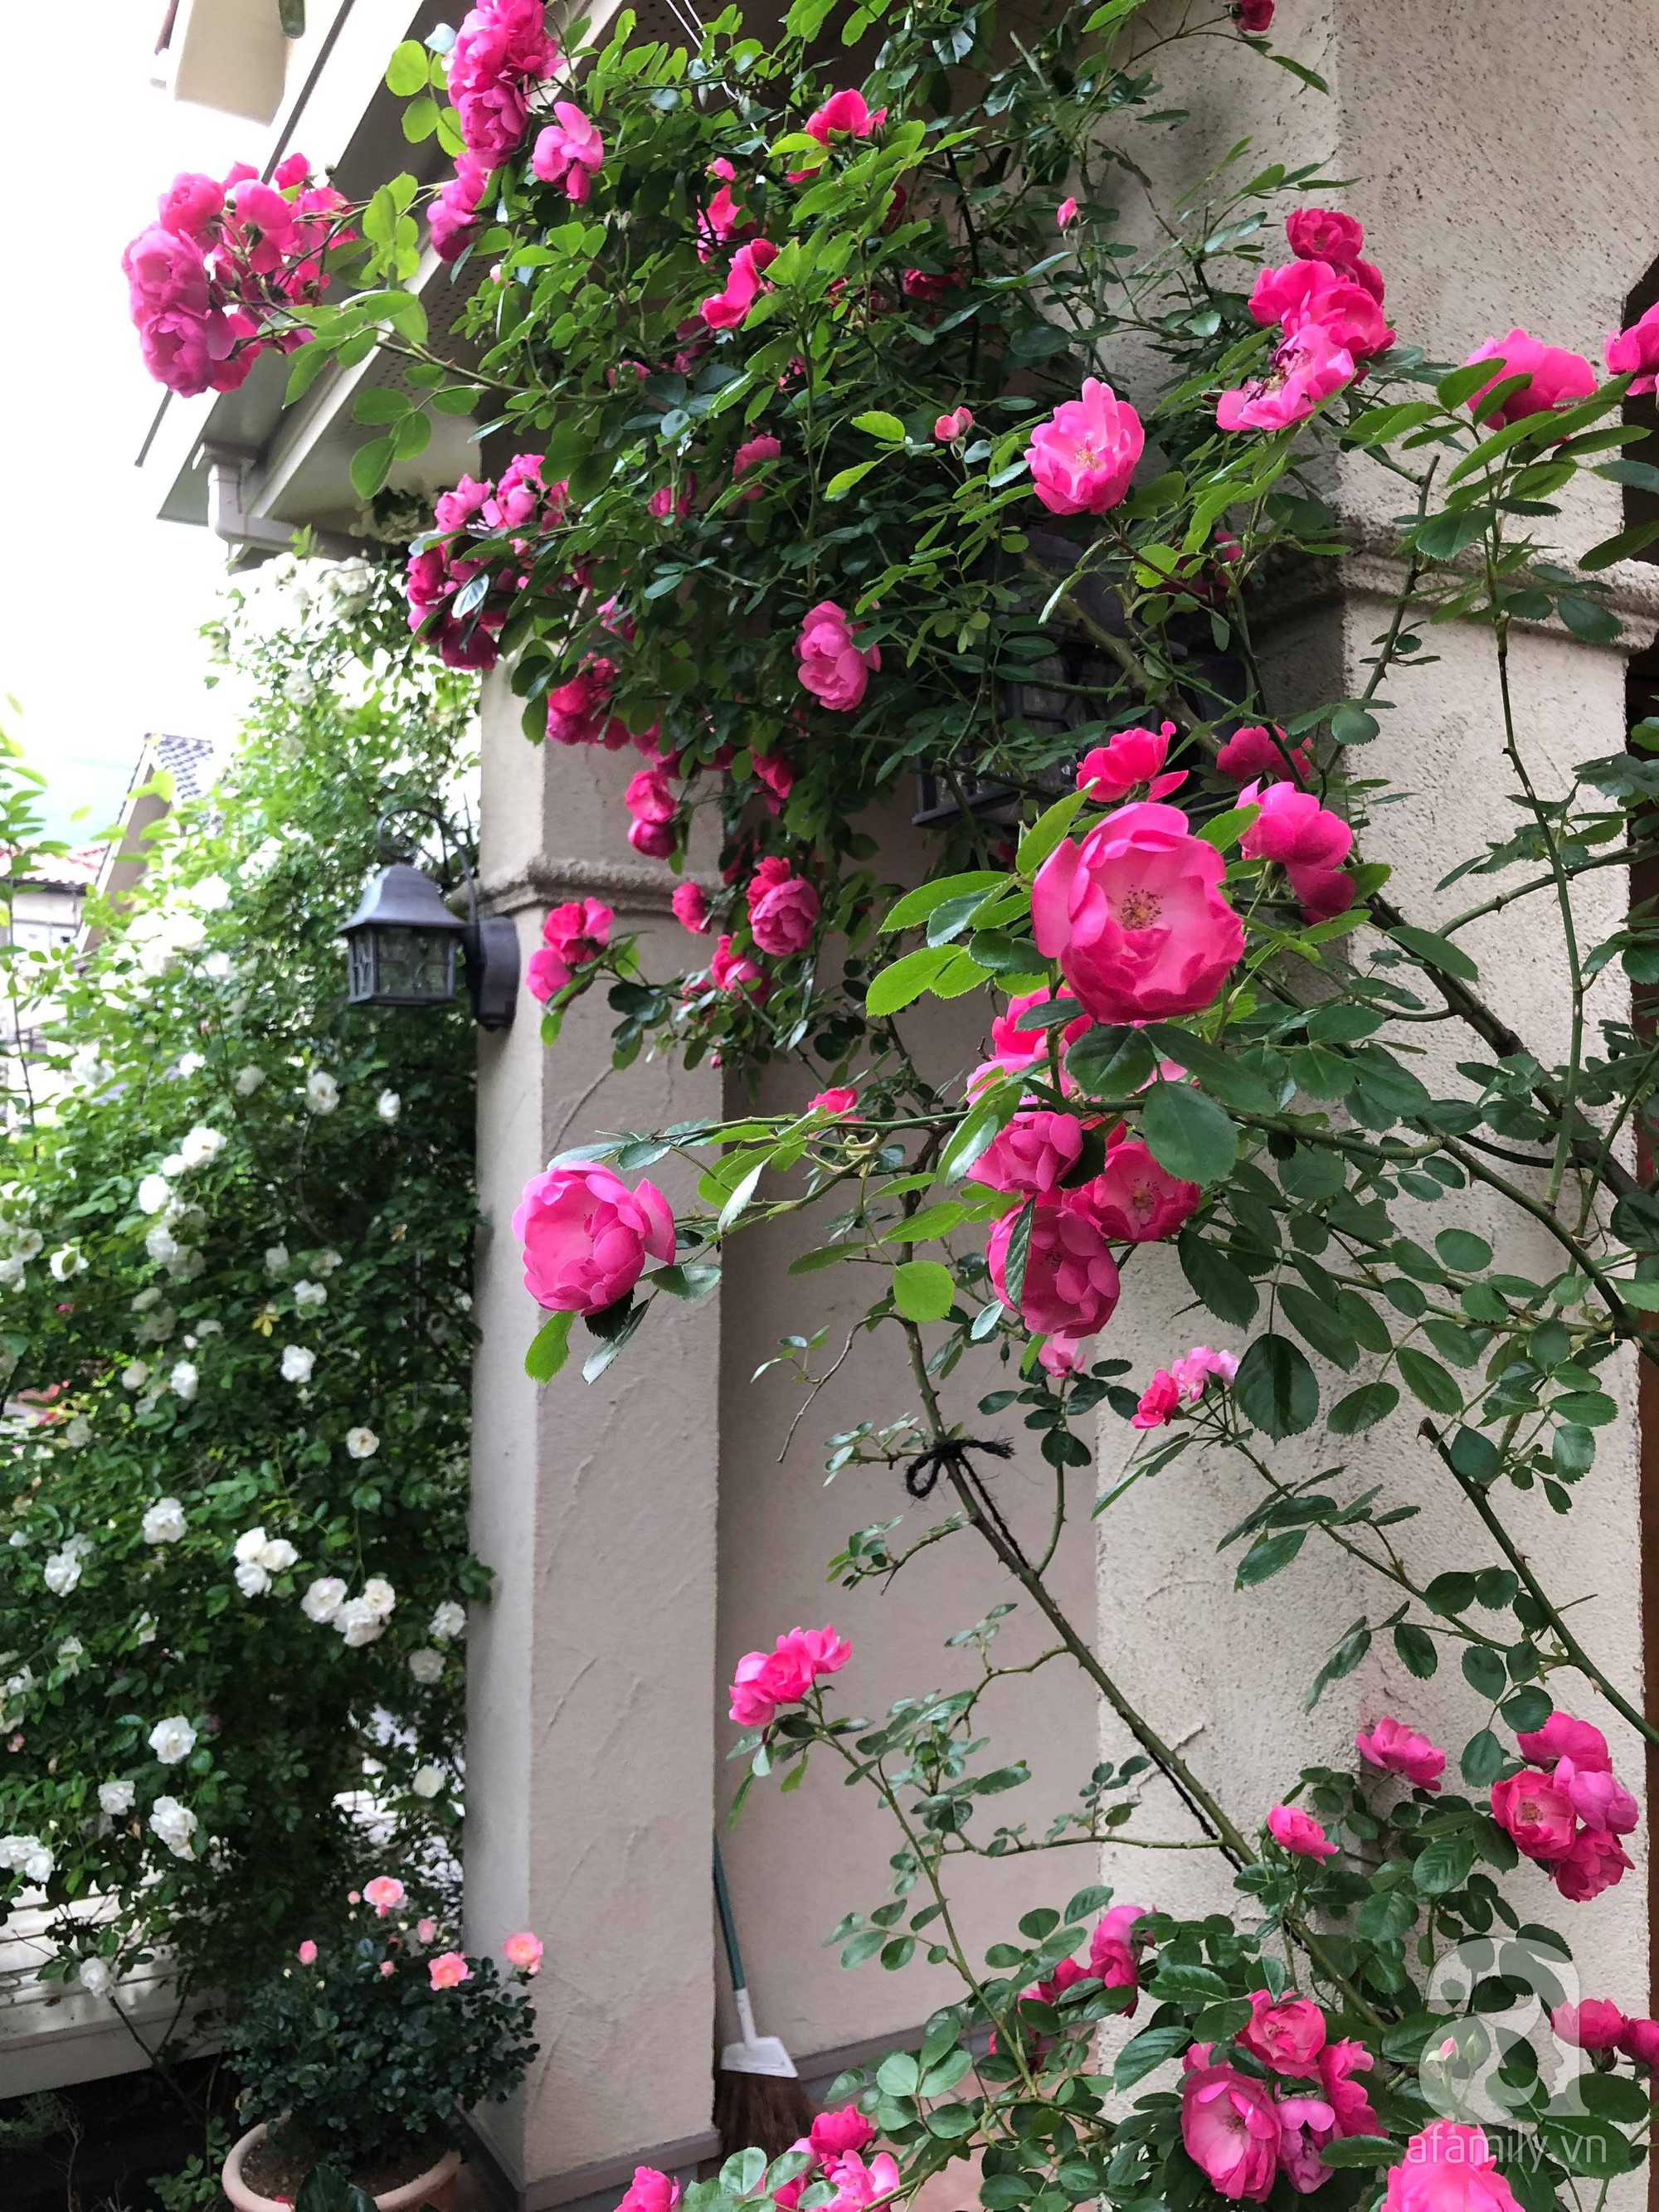 Khu vườn hoa hồng trước nhà đẹp như truyện cổ tích của người đàn ông Việt ở Nhật - Ảnh 10.